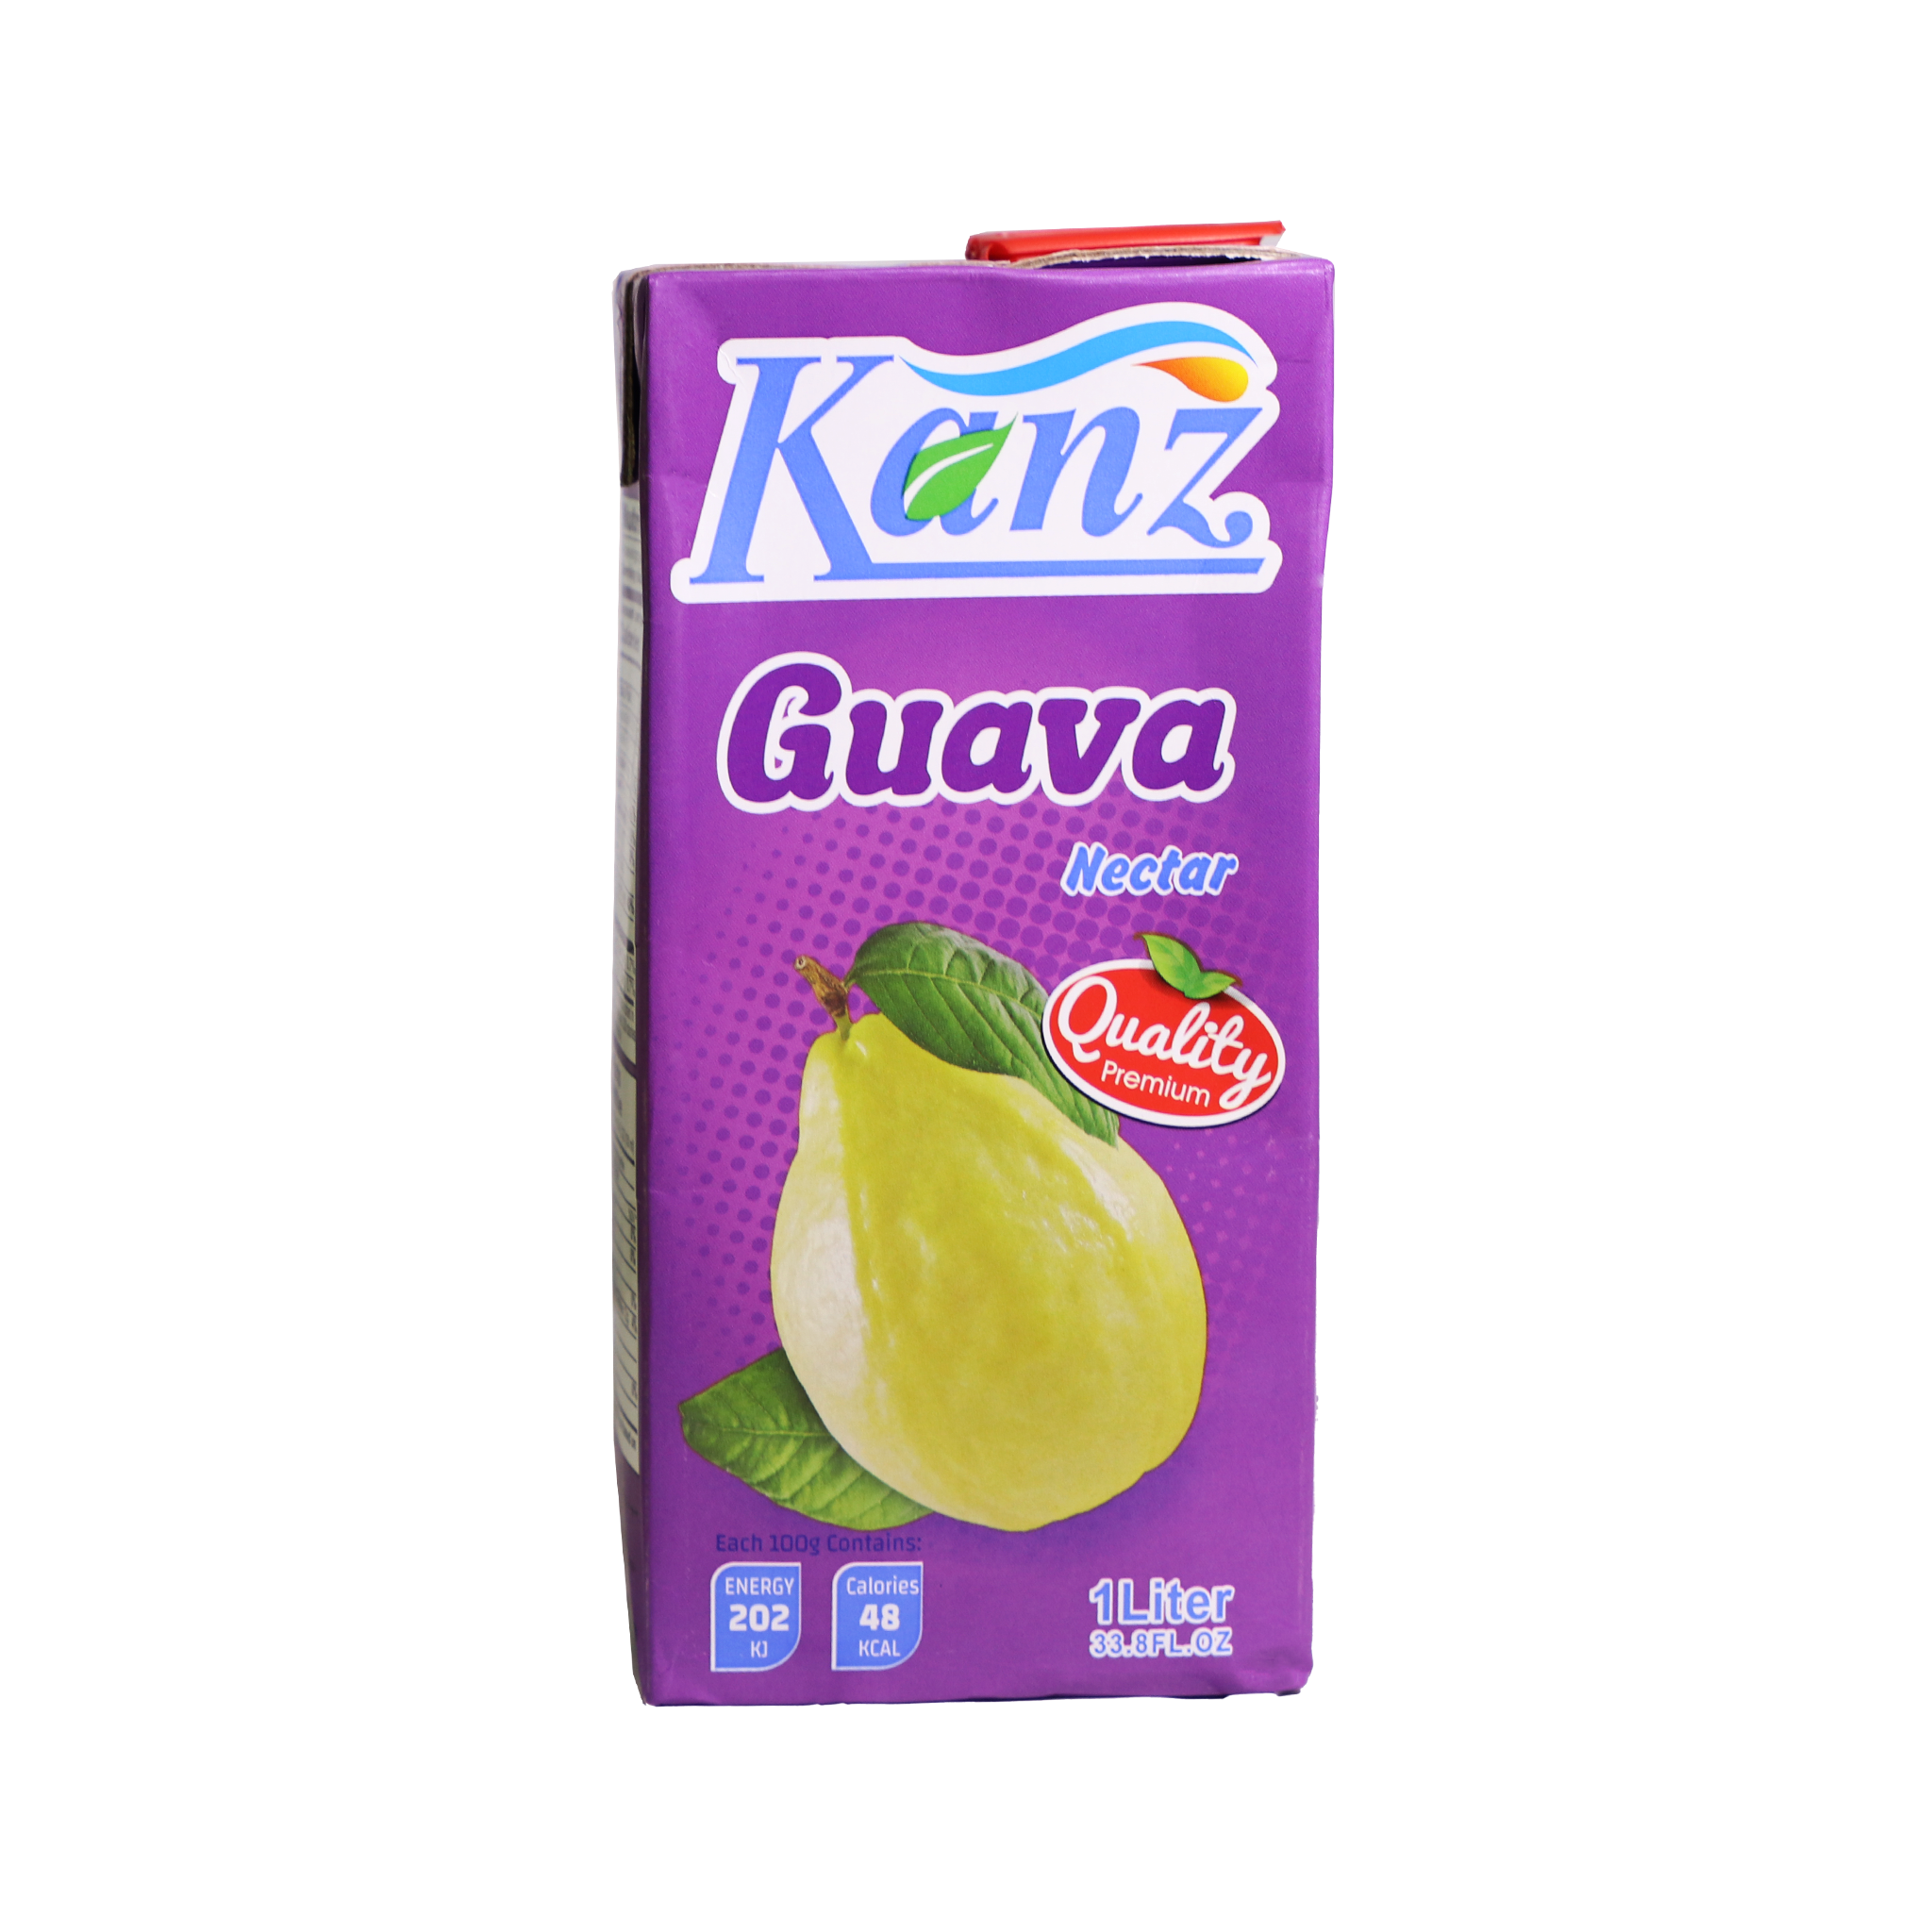 Kanz Guava Nectar TetraPak 1Ltr